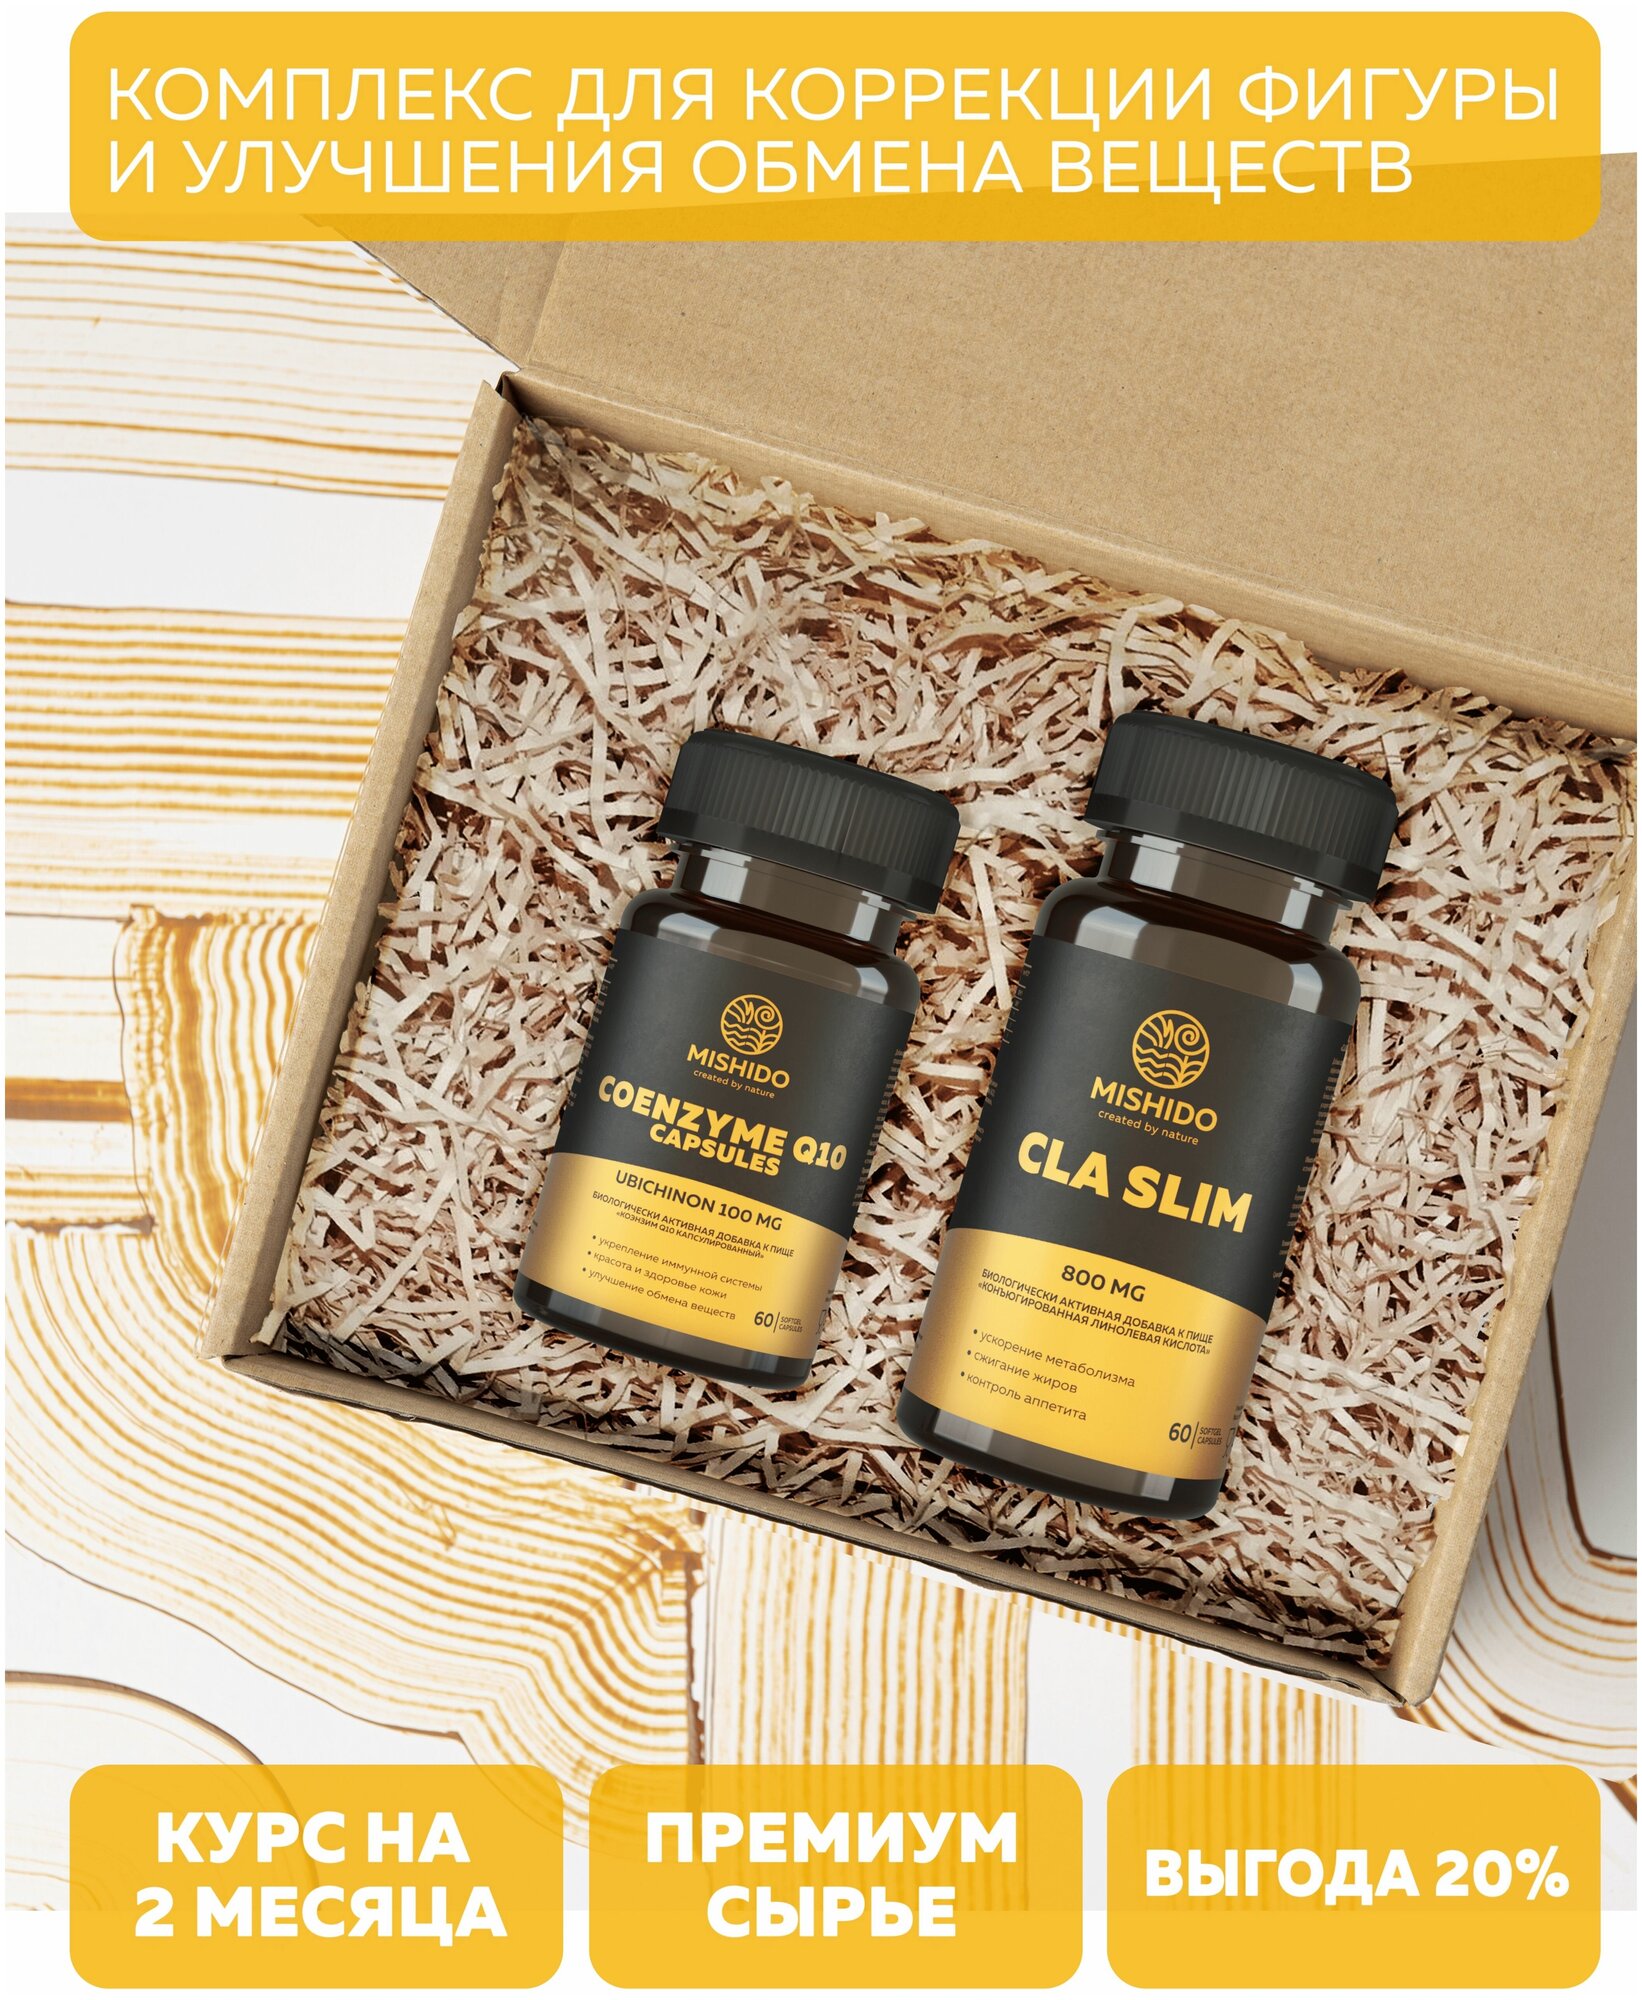 Подарочный набор Комплекс для коррекции фигуры MISHIDO: Коэнзим Q10 100 мг + жиросжигатель CLA SLIM из сафлорового масла 800 мг